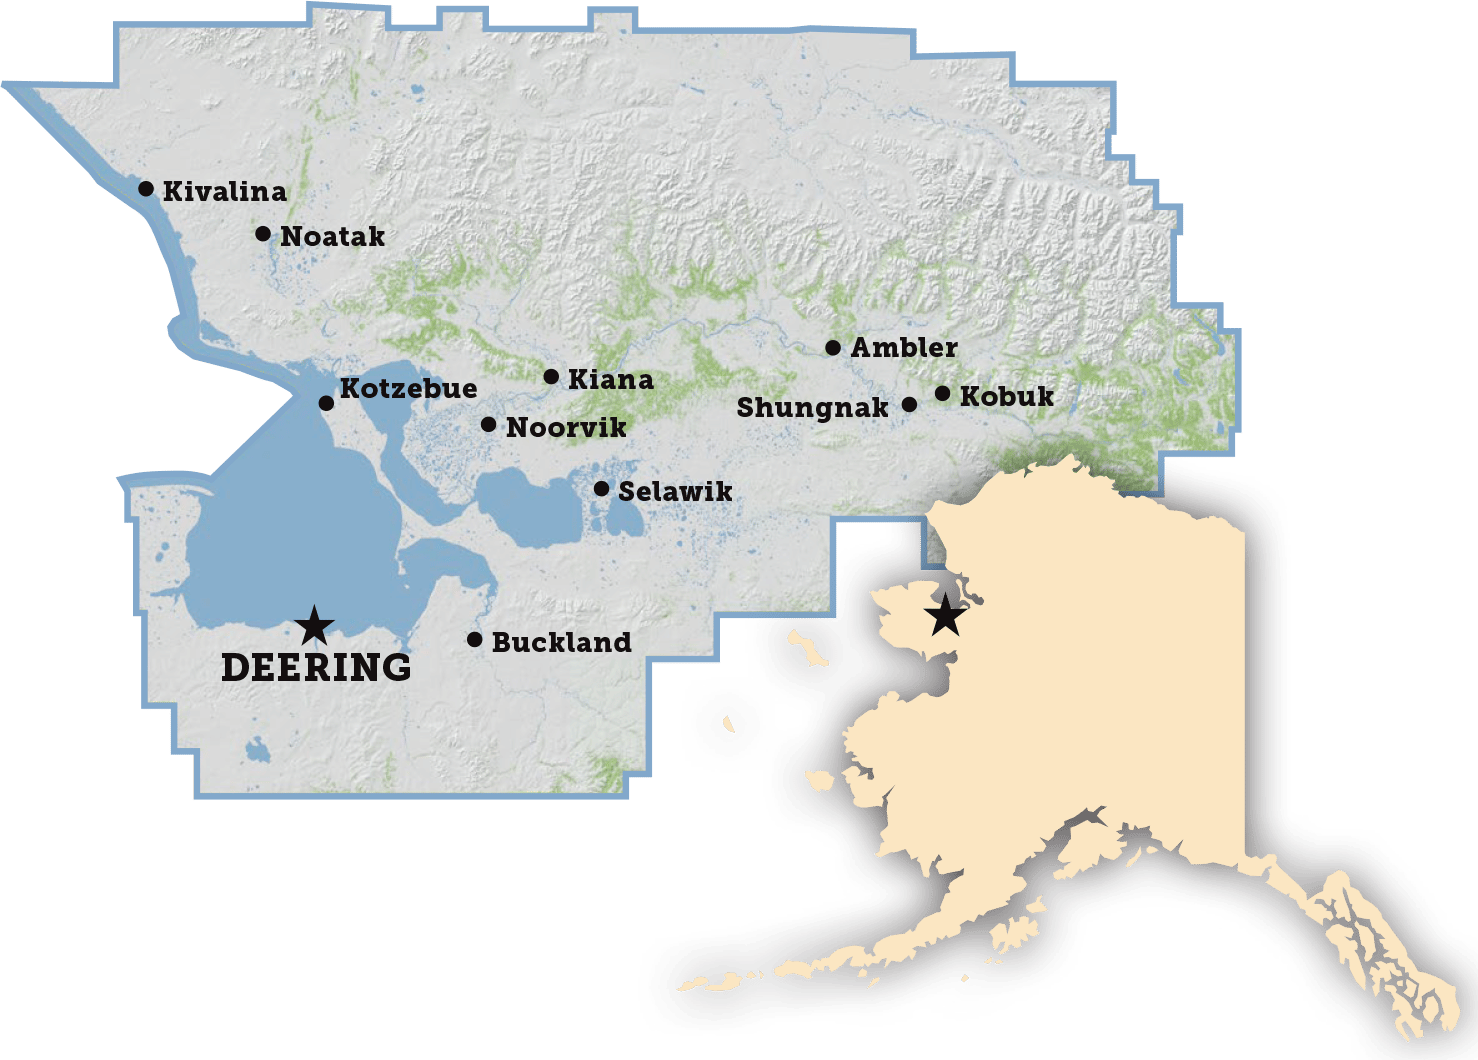 Deering – Northwest Arctic Borough